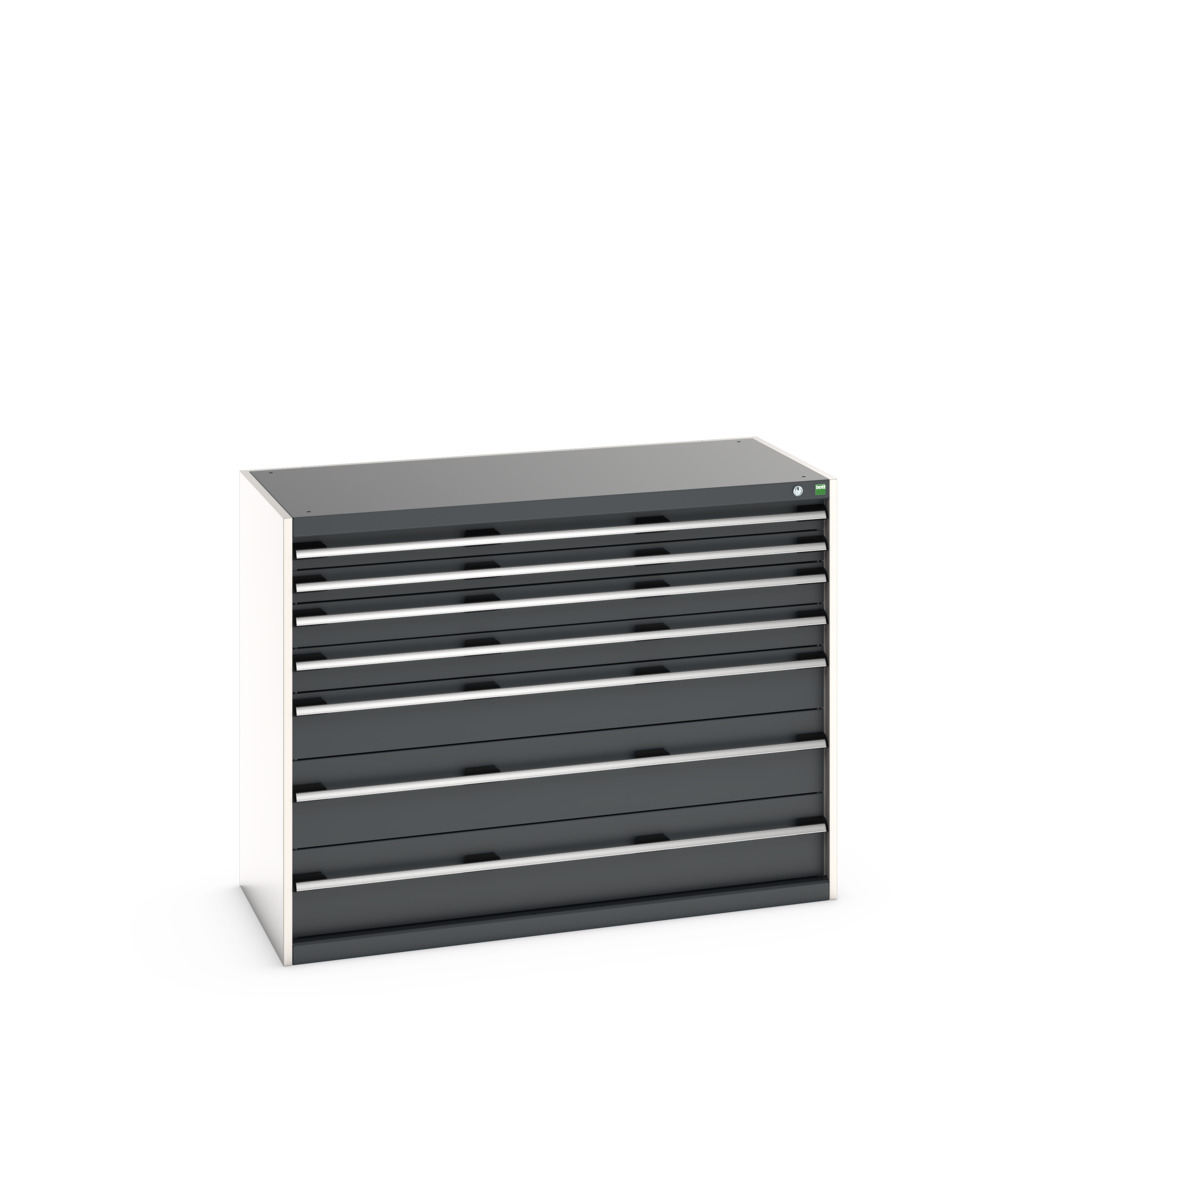 40022126.19V - cubio drawer cabinet